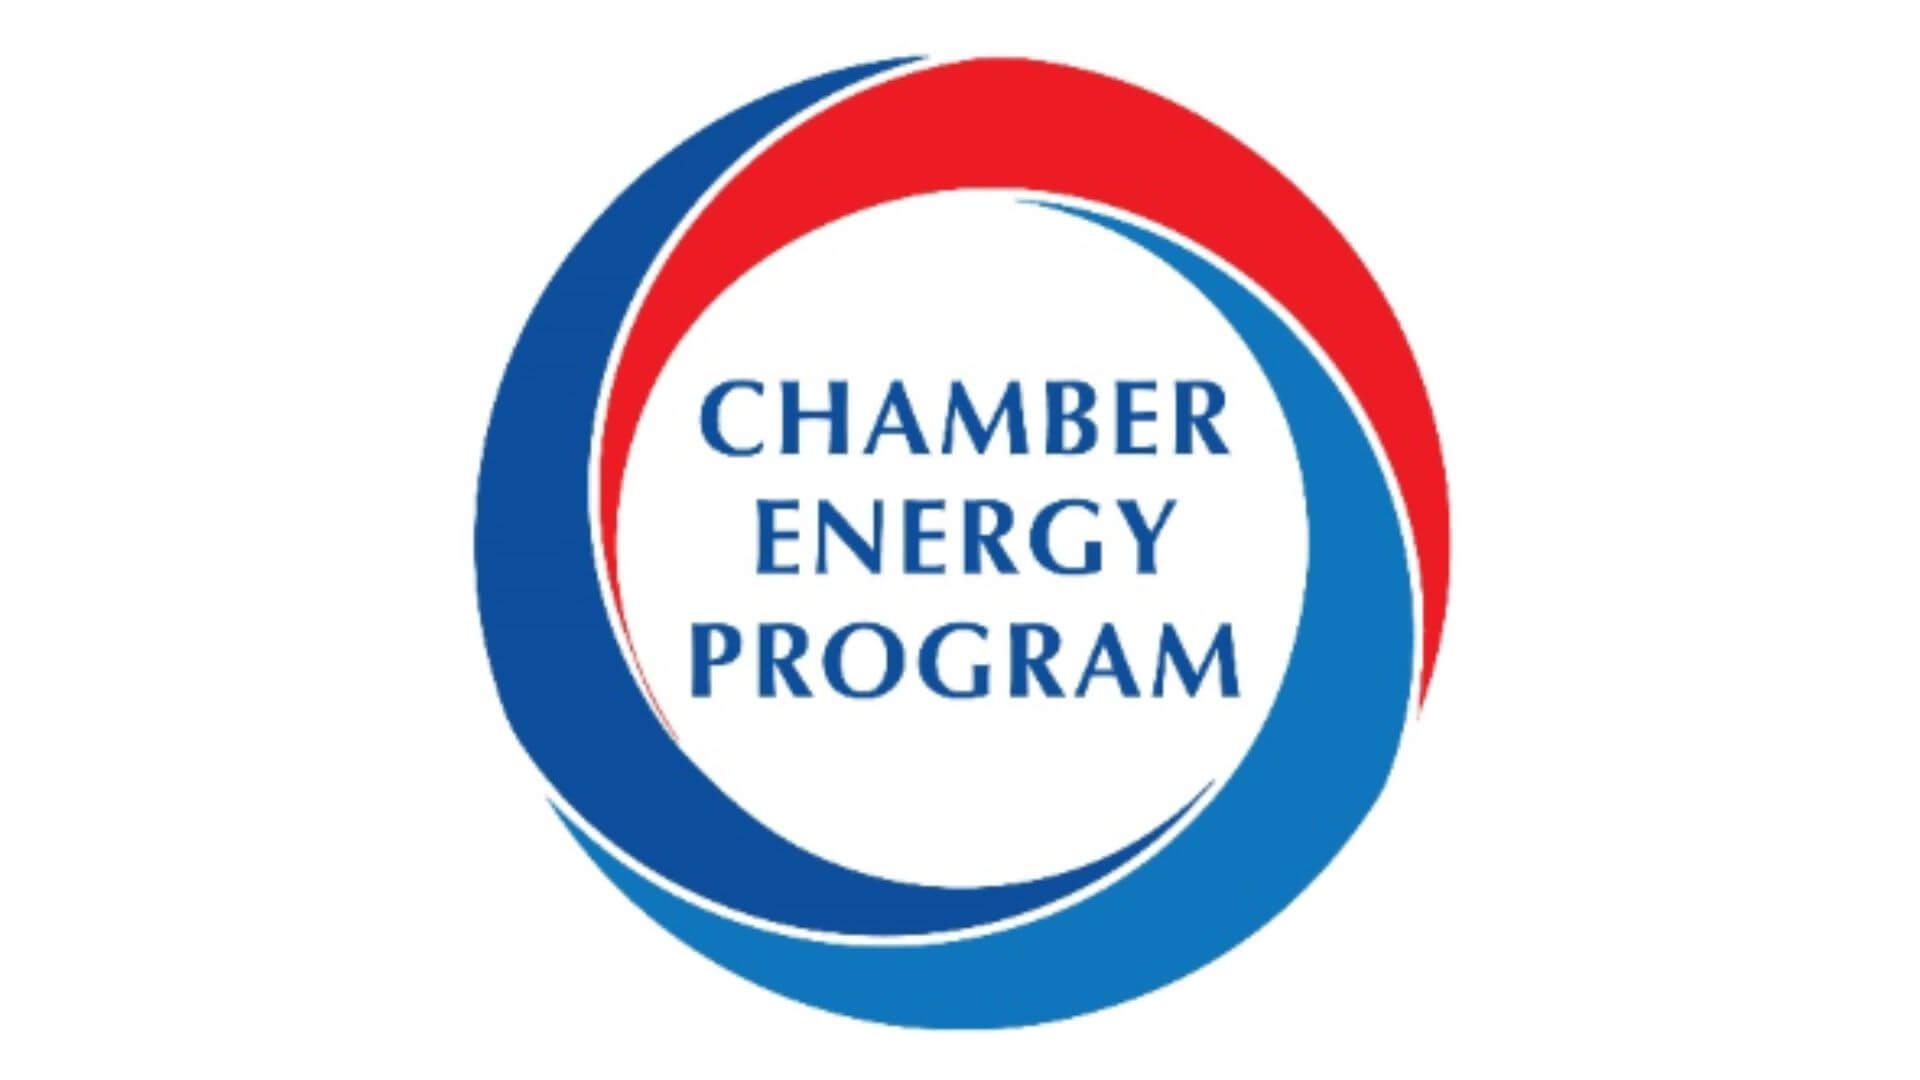 Chamber Energy Program logo